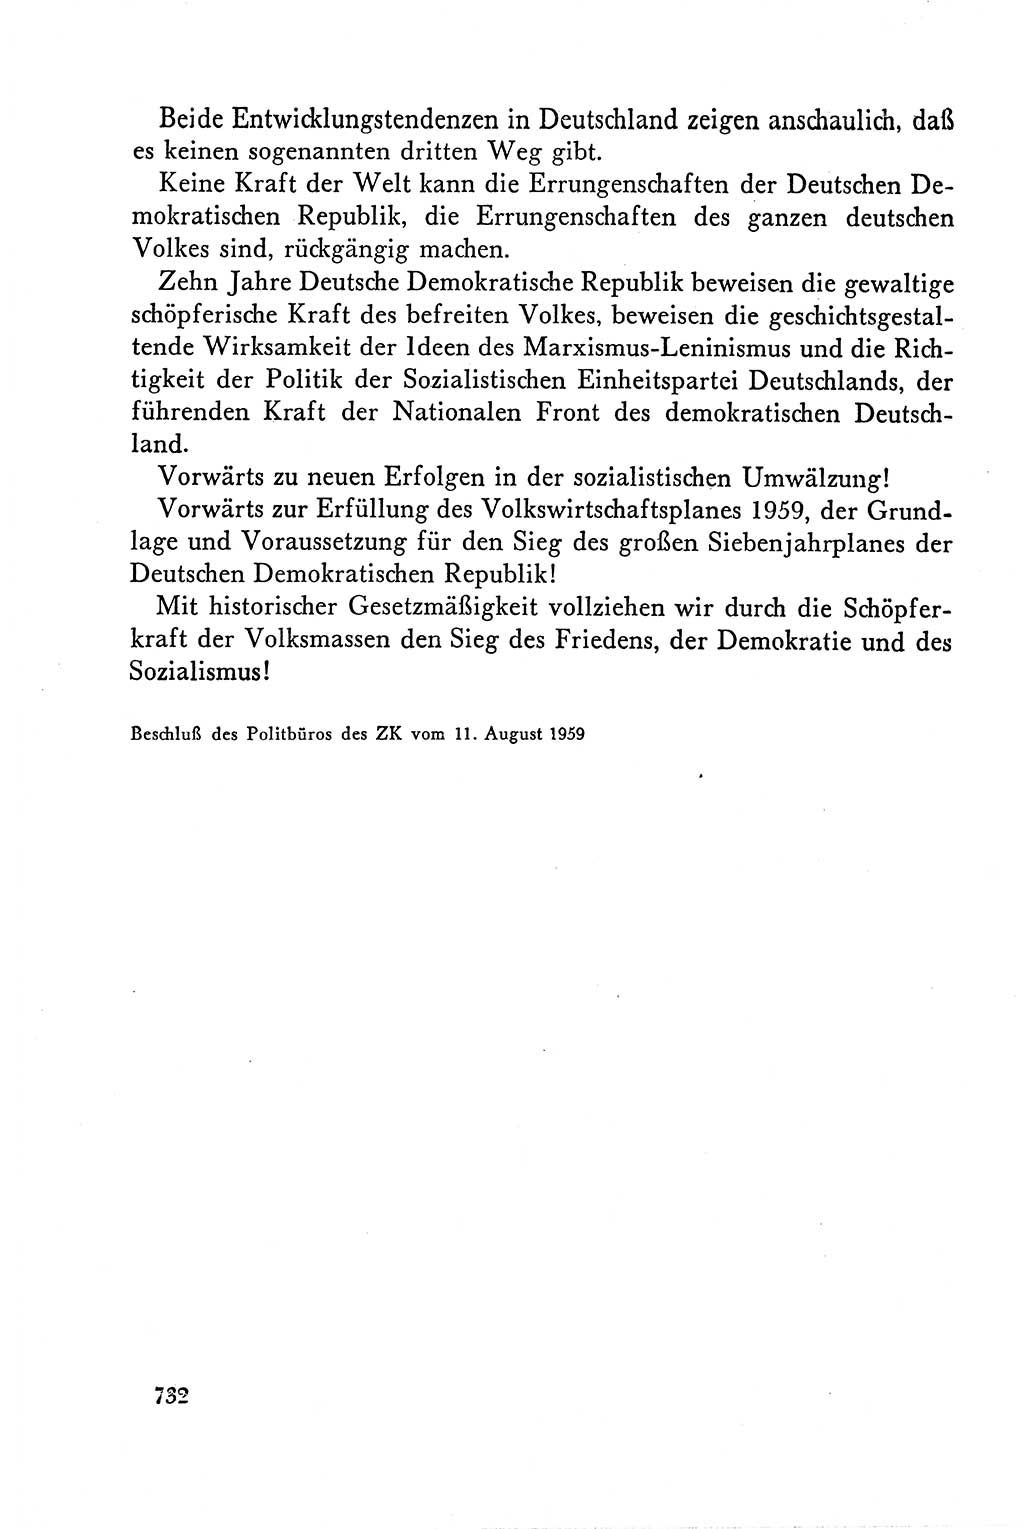 Dokumente der Sozialistischen Einheitspartei Deutschlands (SED) [Deutsche Demokratische Republik (DDR)] 1958-1959, Seite 732 (Dok. SED DDR 1958-1959, S. 732)